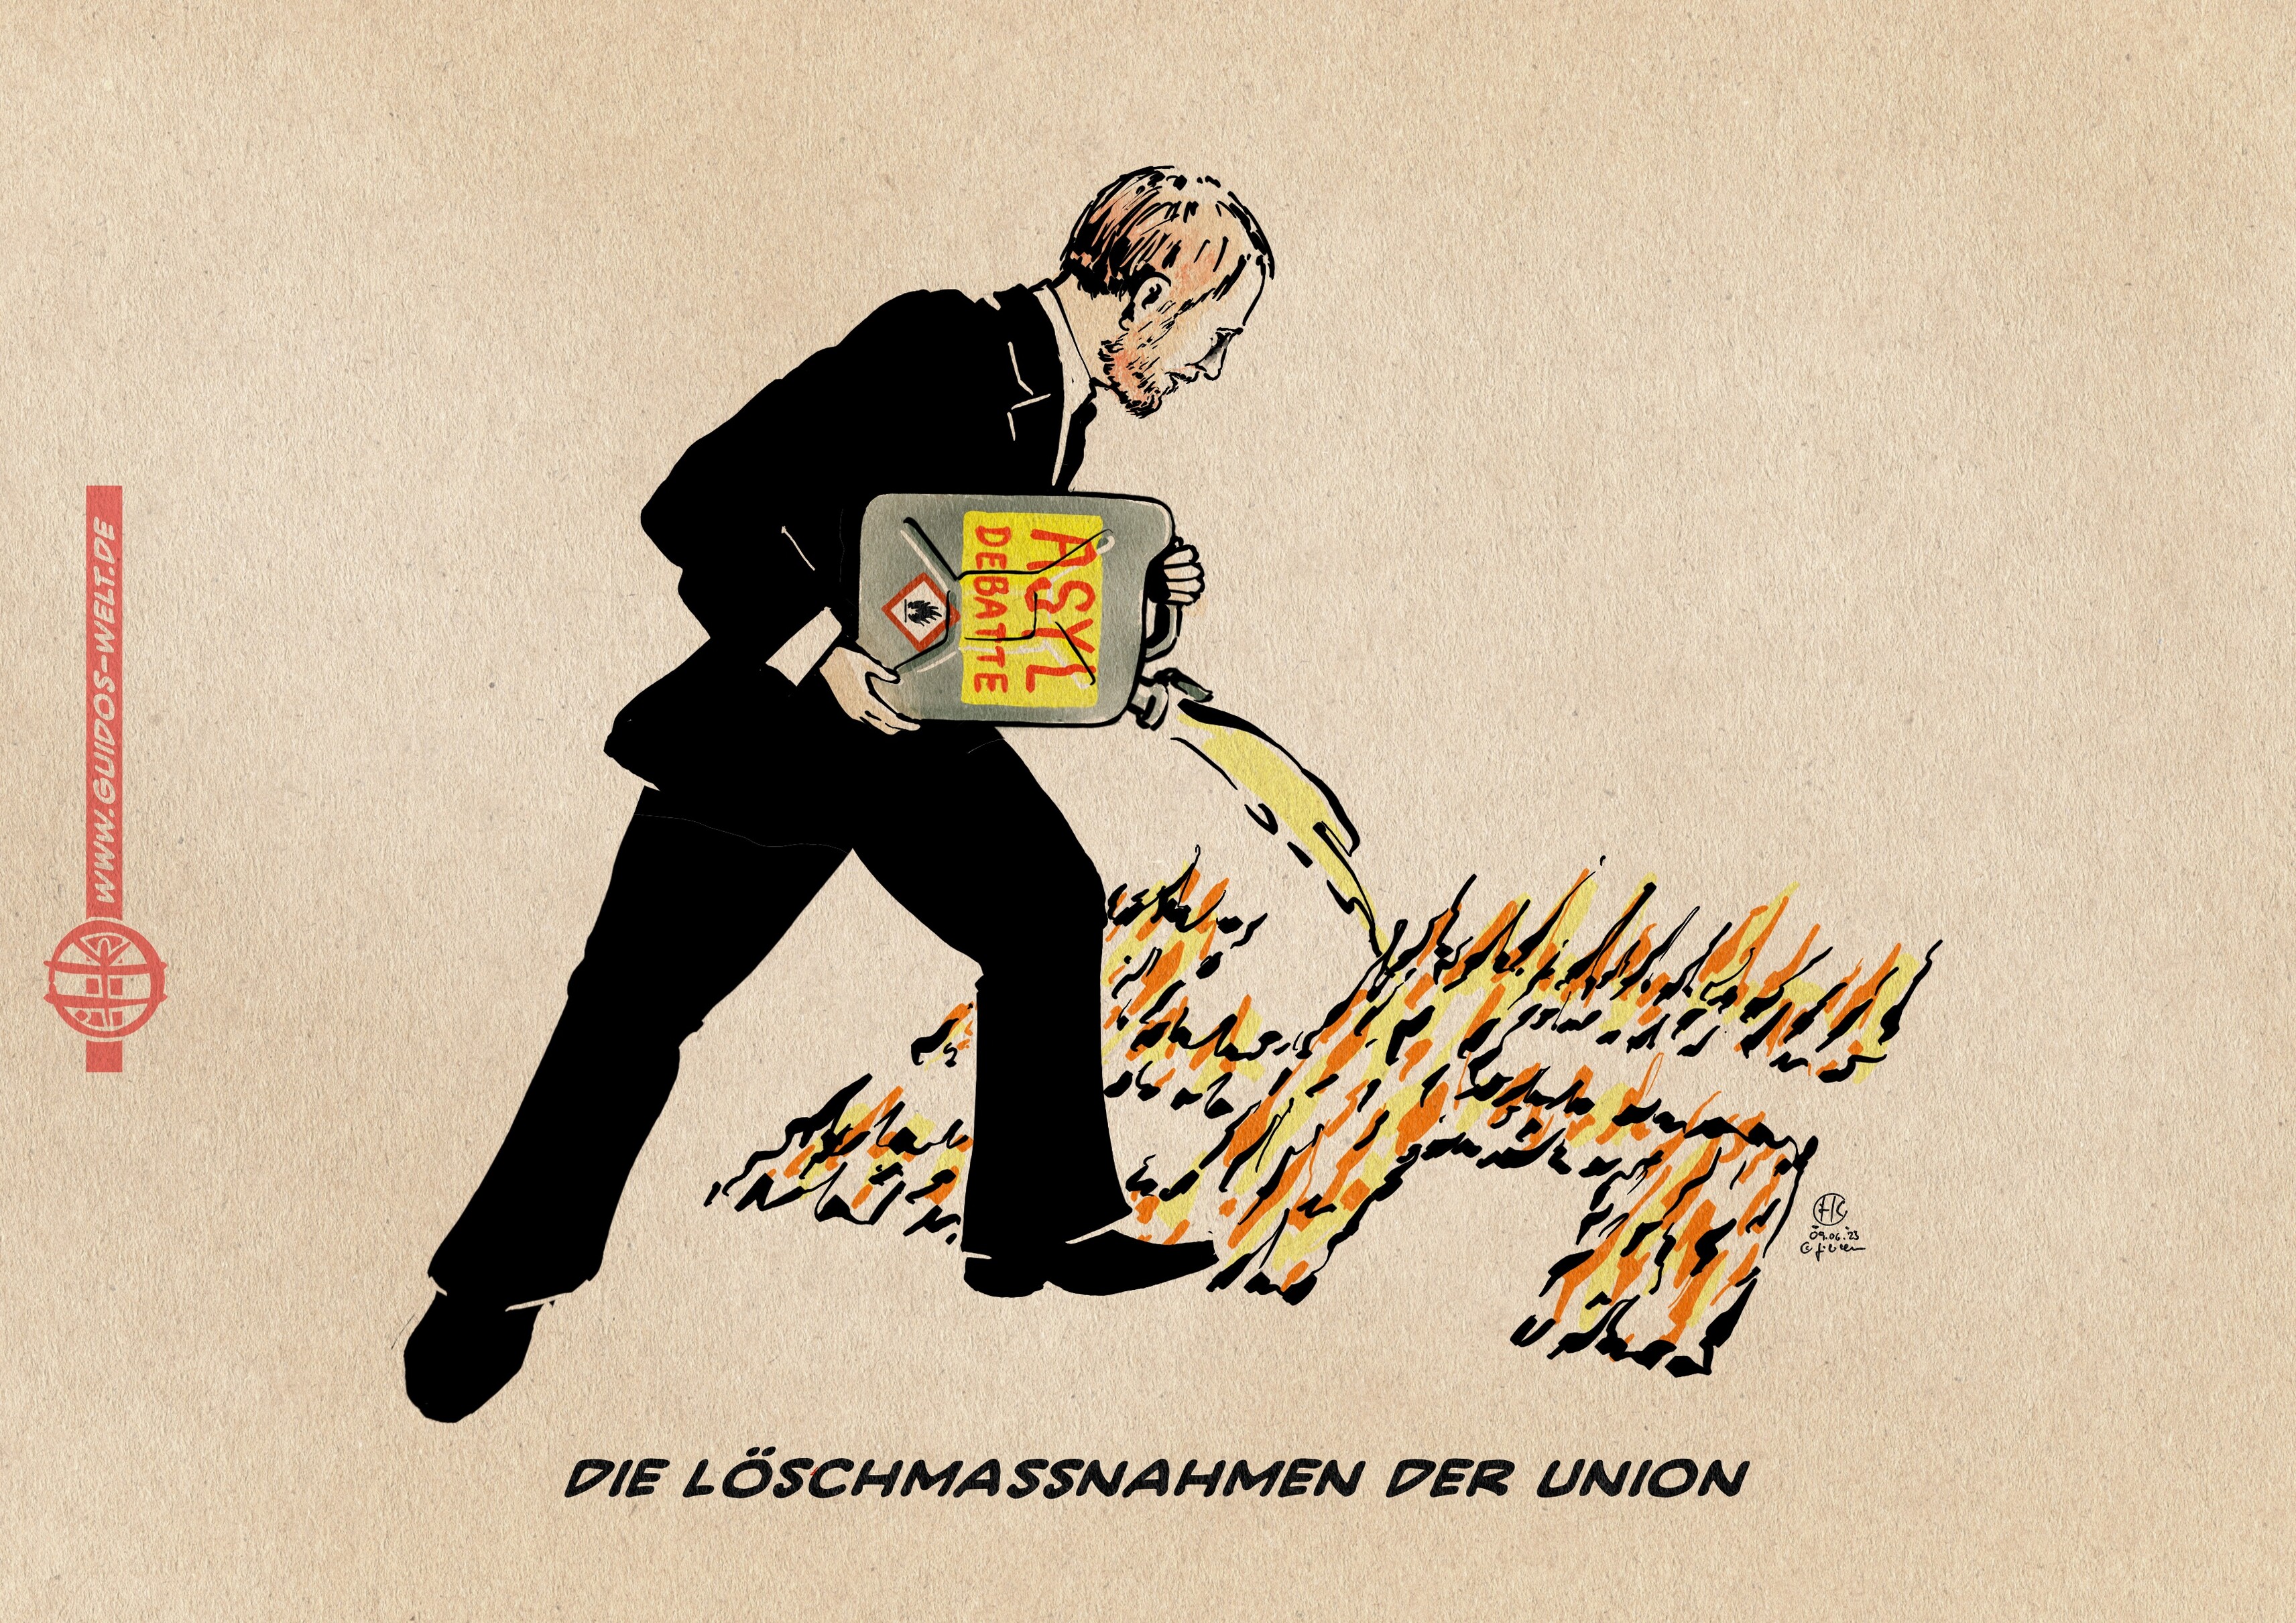 Illustration Kretschmer kippt einen mit Asyldebatte beschrifteten Benzinkanister in ein Feuer in Form eines Hakenkreuzes. Textzeile: die Löschmaßnahmen der Union